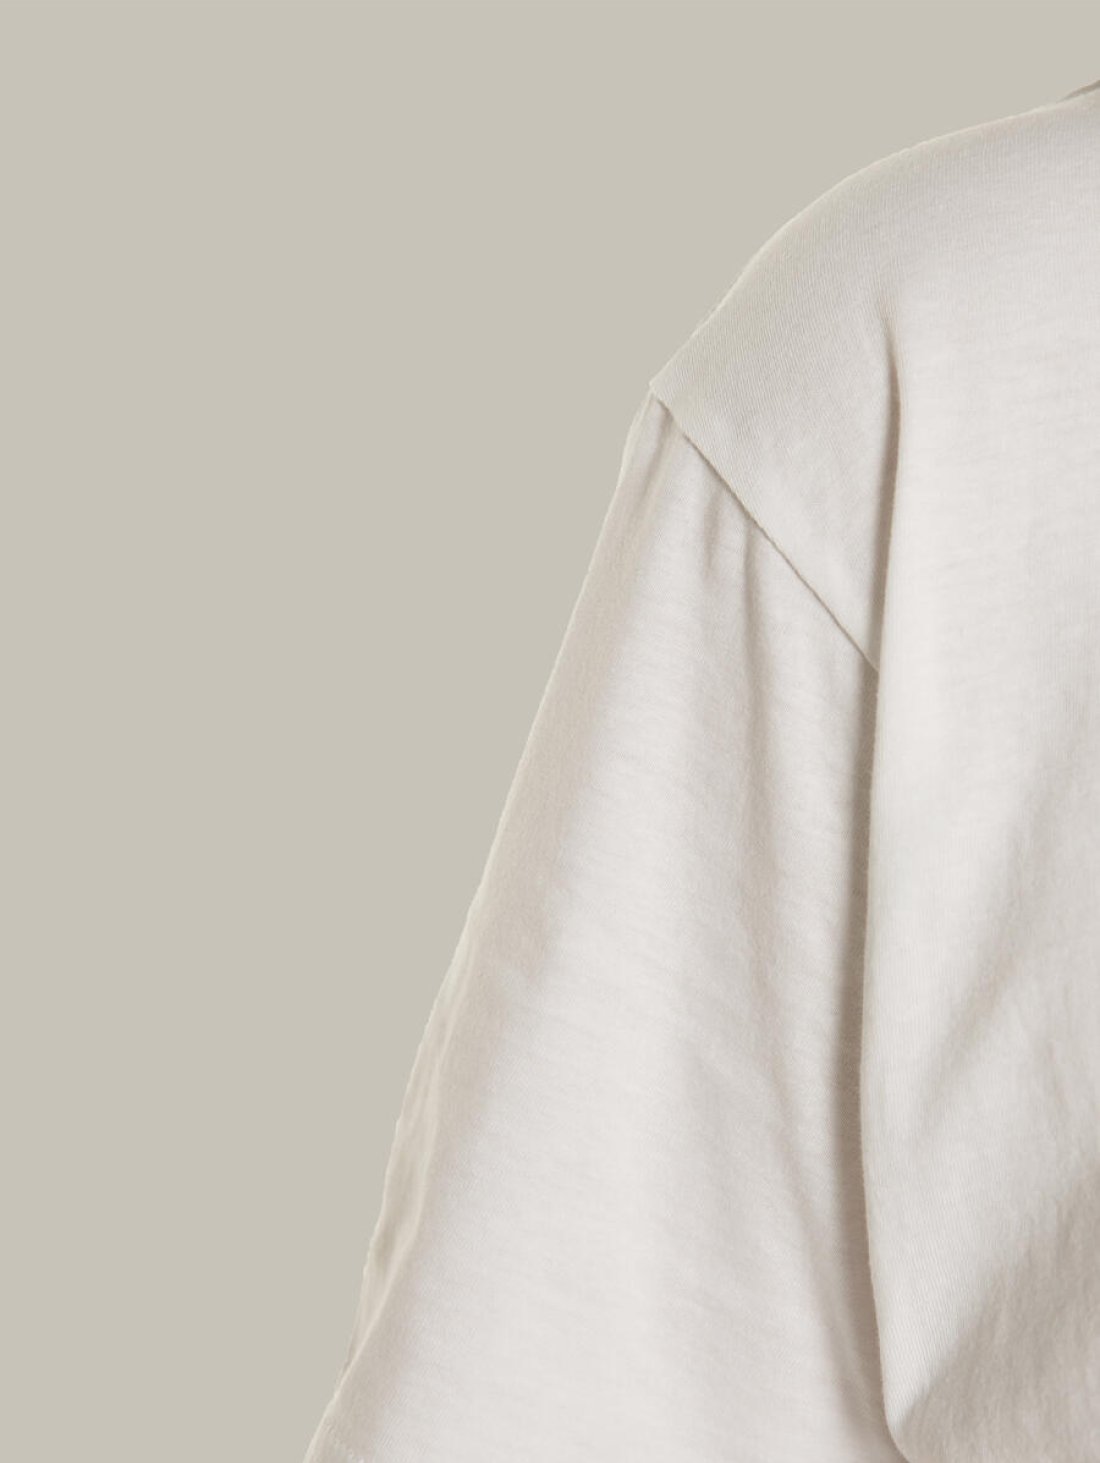 Чоловіча футболка, біла з принтом аватара Hopper 035